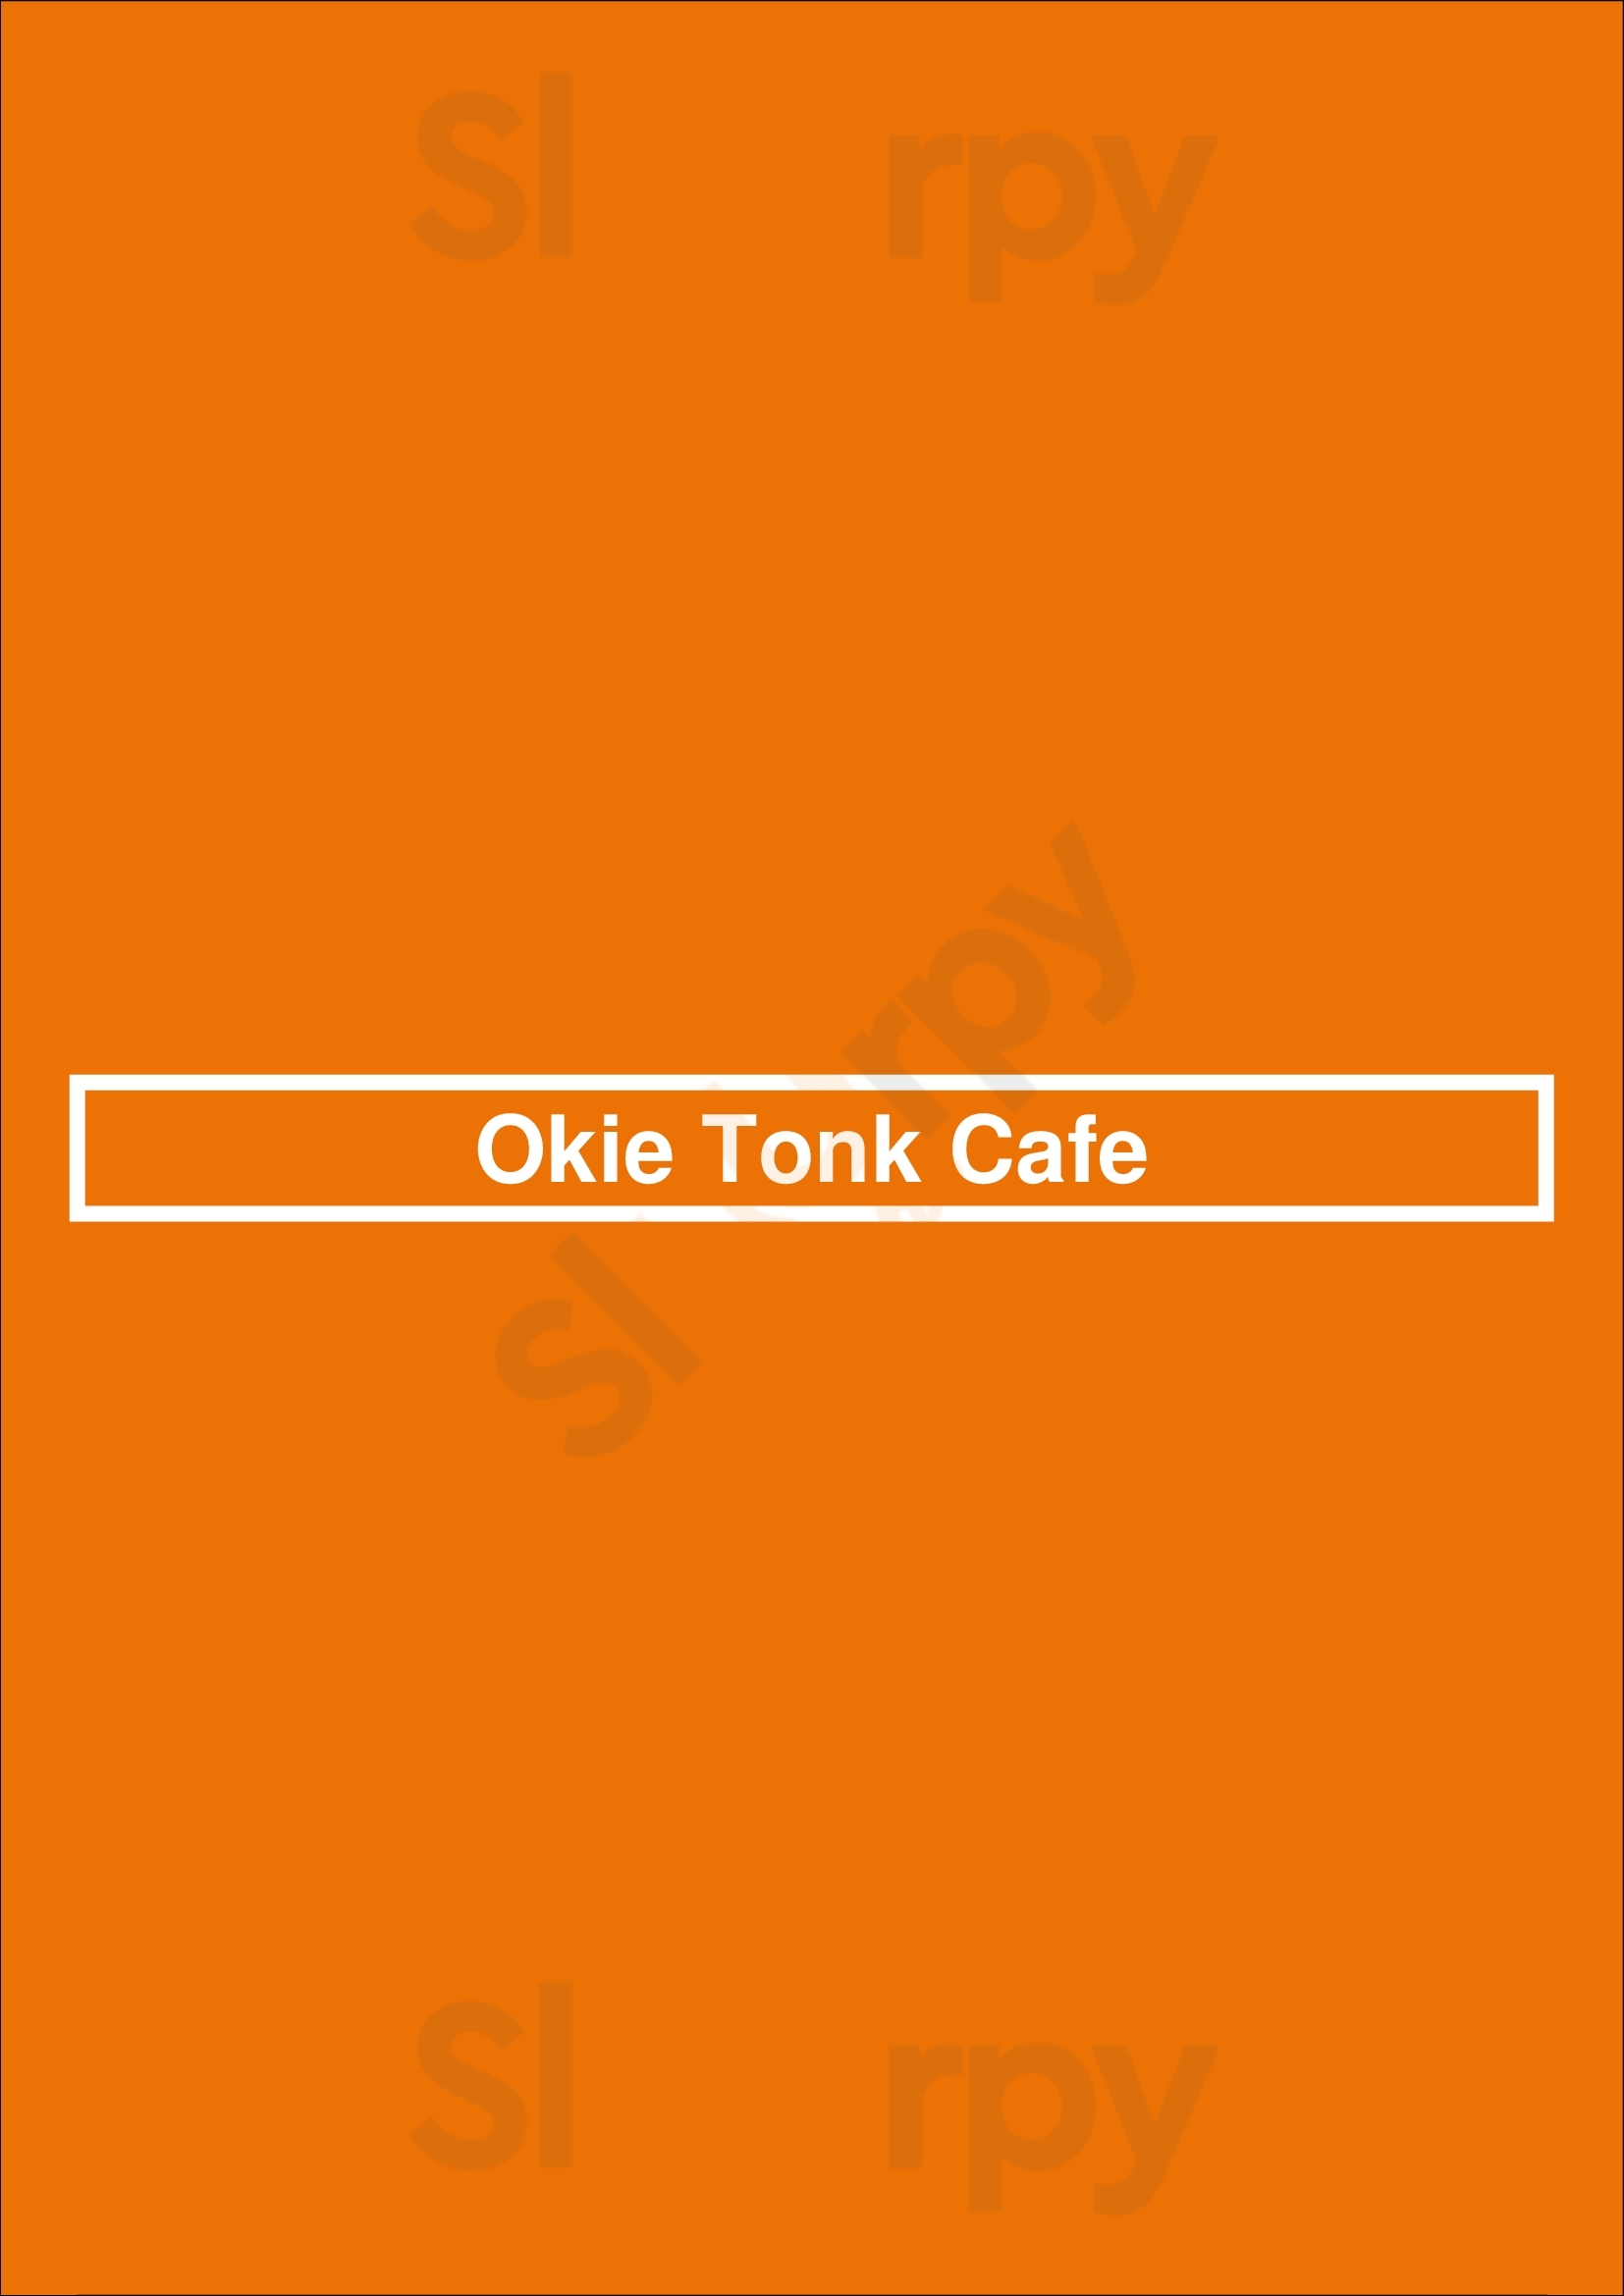 Okie Tonk Cafe Moore Menu - 1